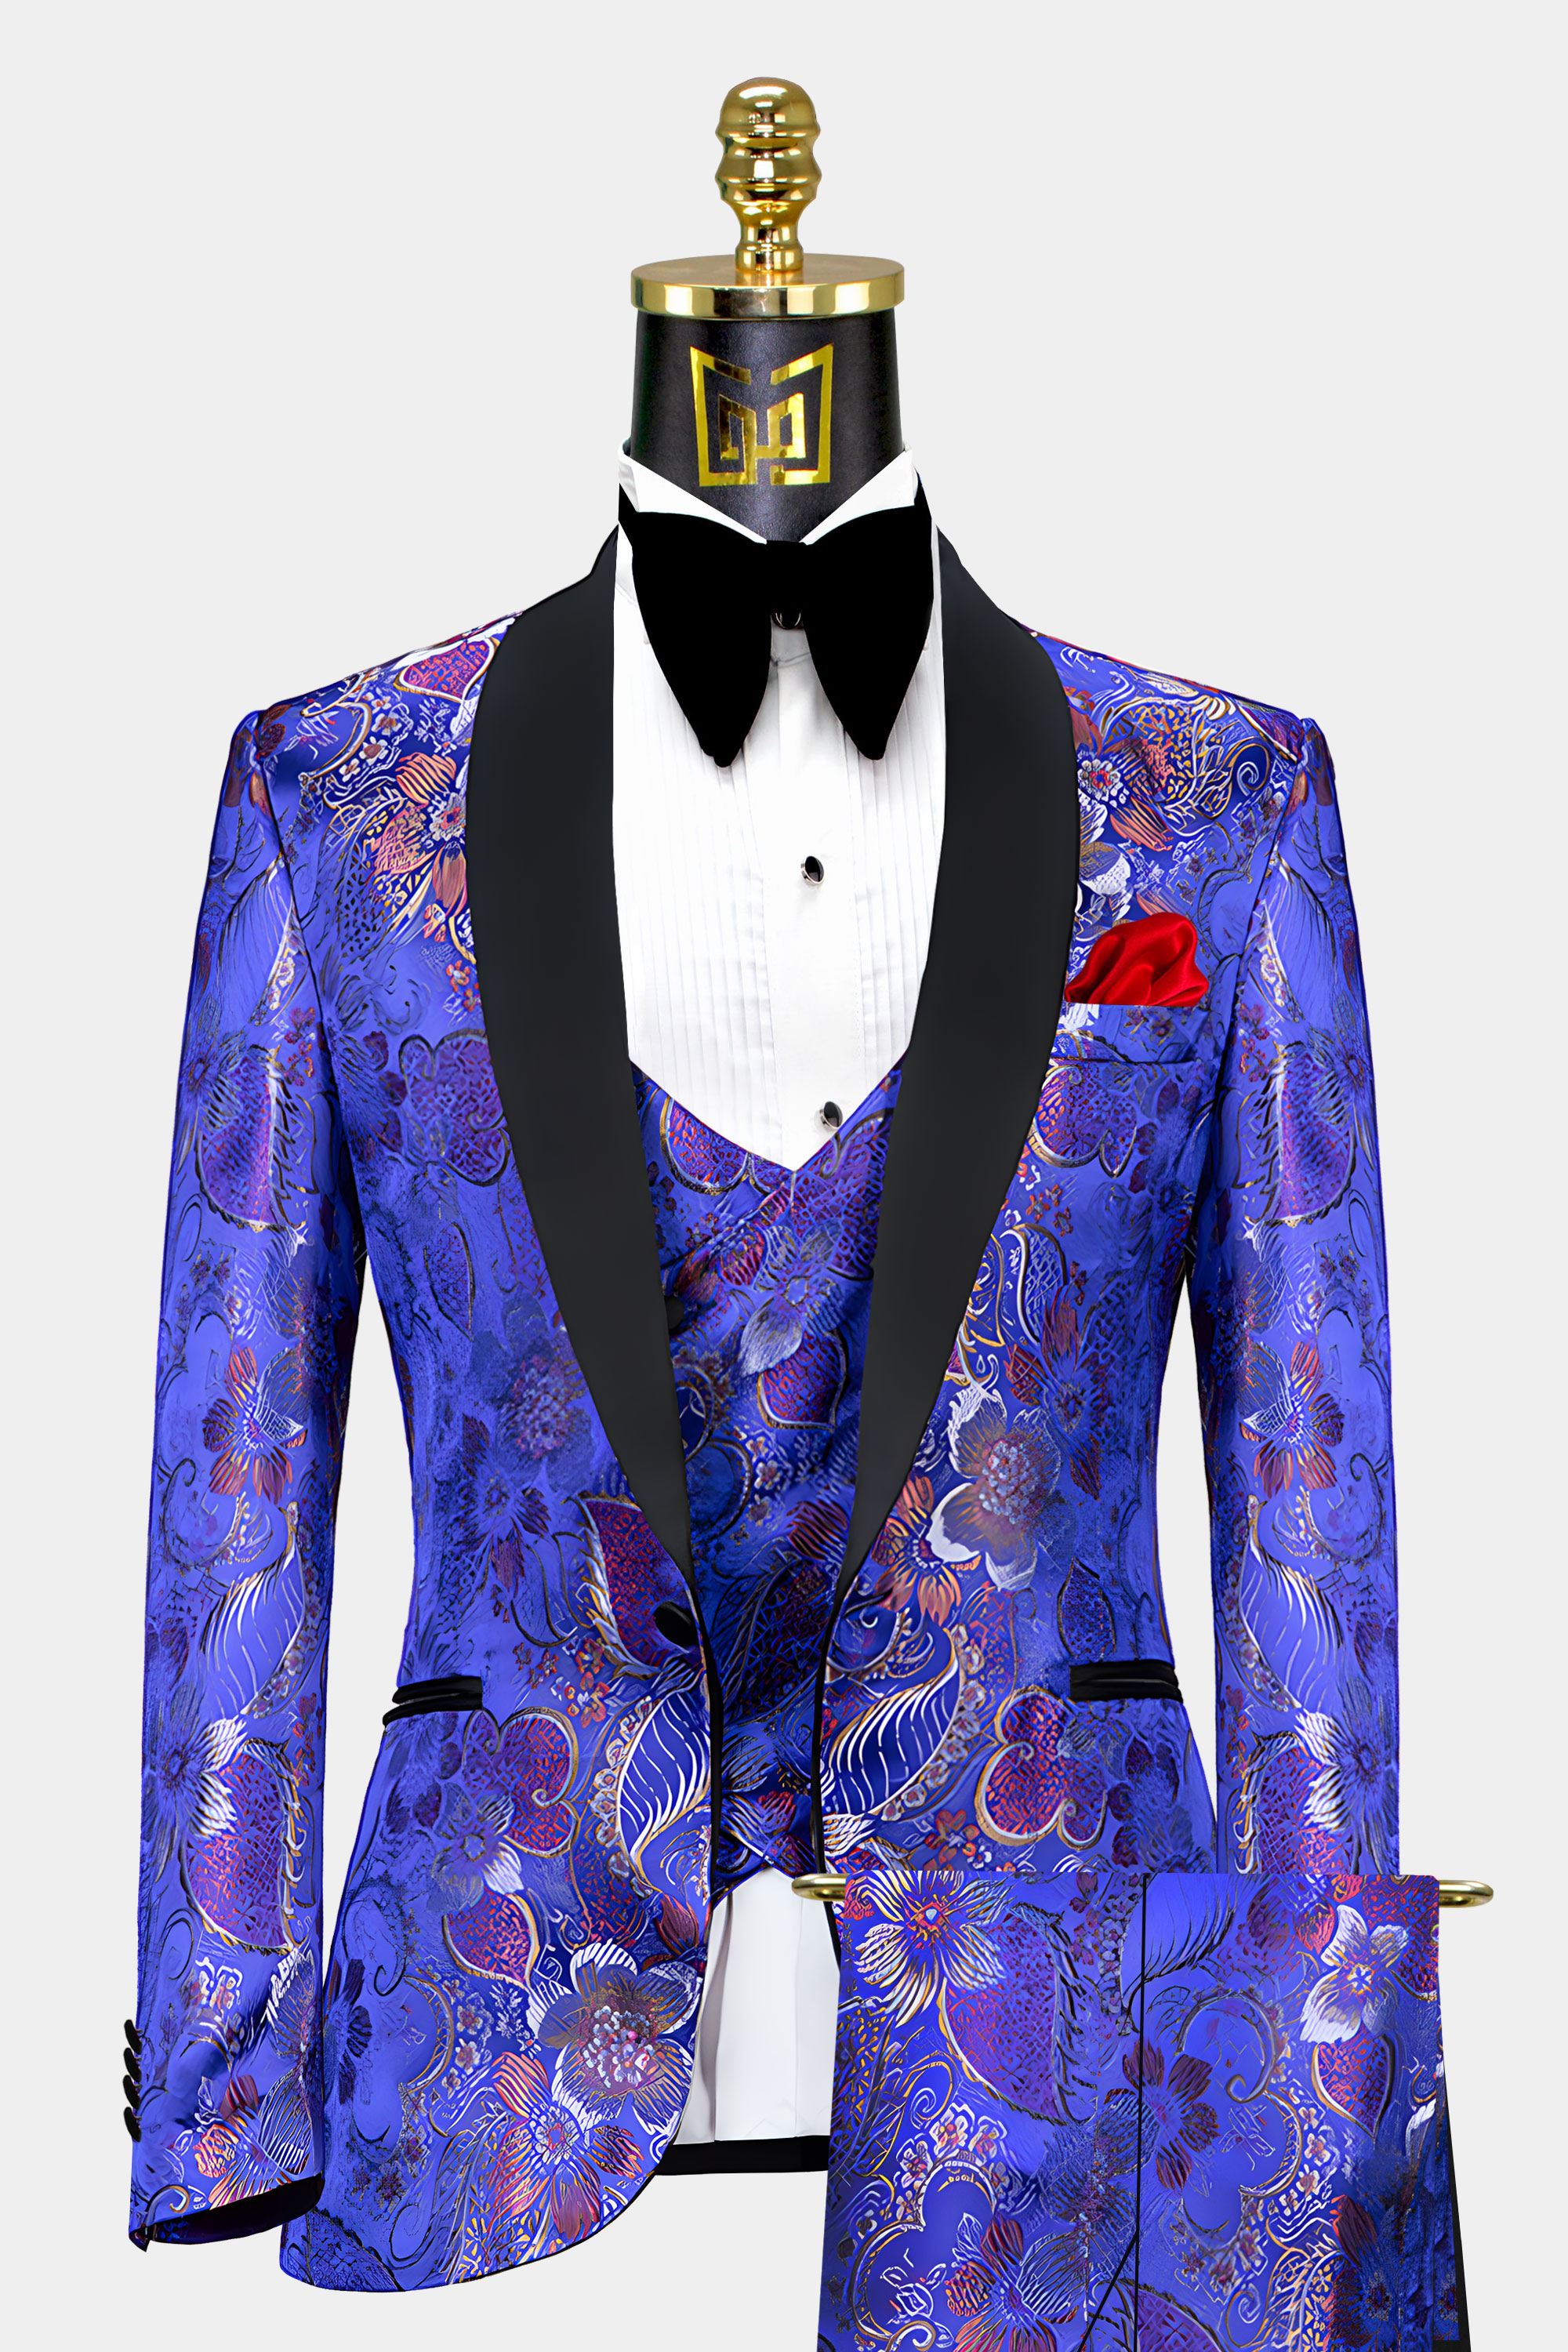 Purple-and-Blue-Tuxedo-Groom-Weddin-Prom-Suit-for-Men-from-Gentlemansguru.com